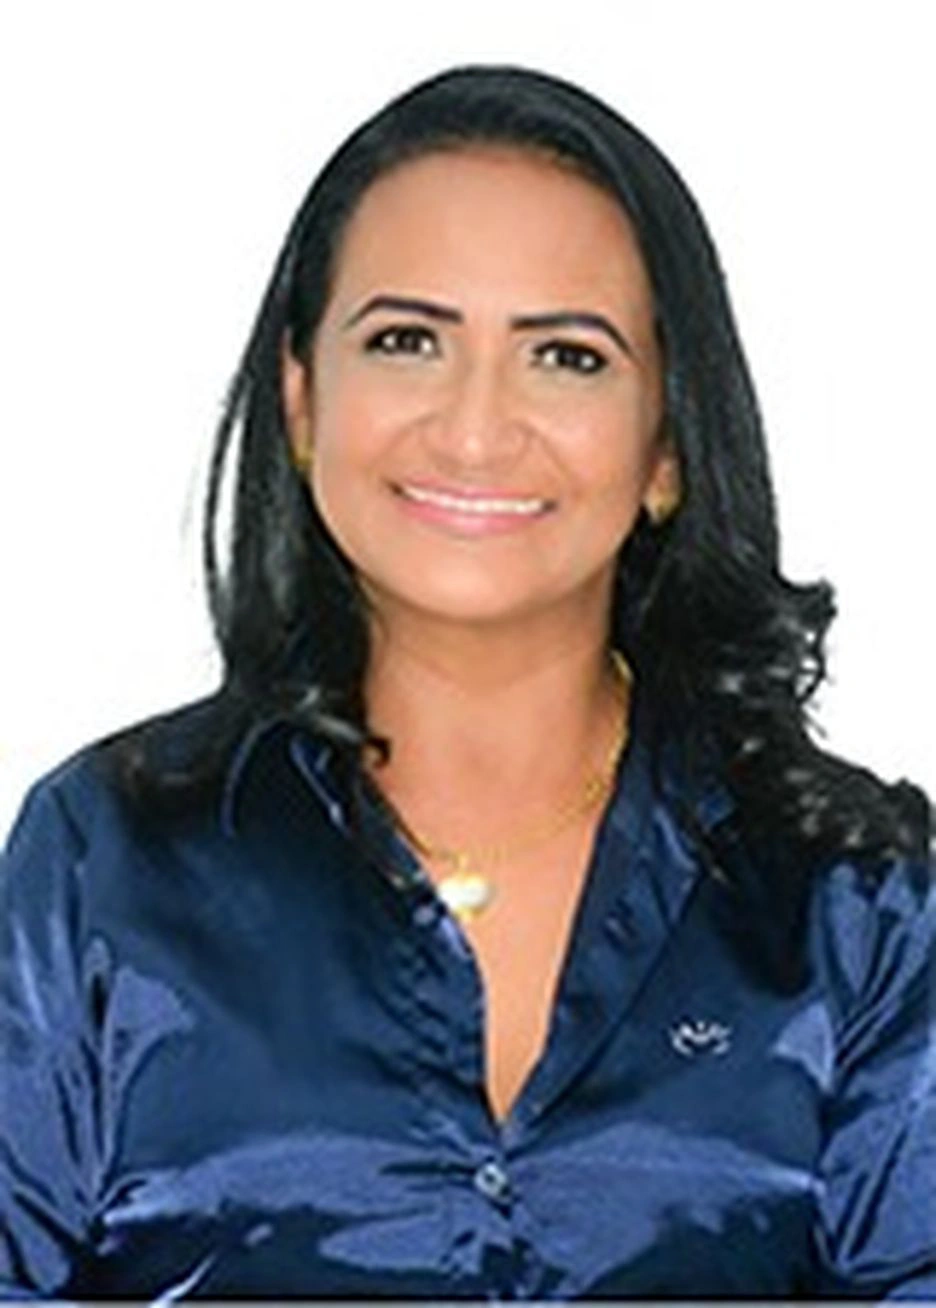 O PP deu R$ 2,2 milhões para a candidata Marlucia Oliveira